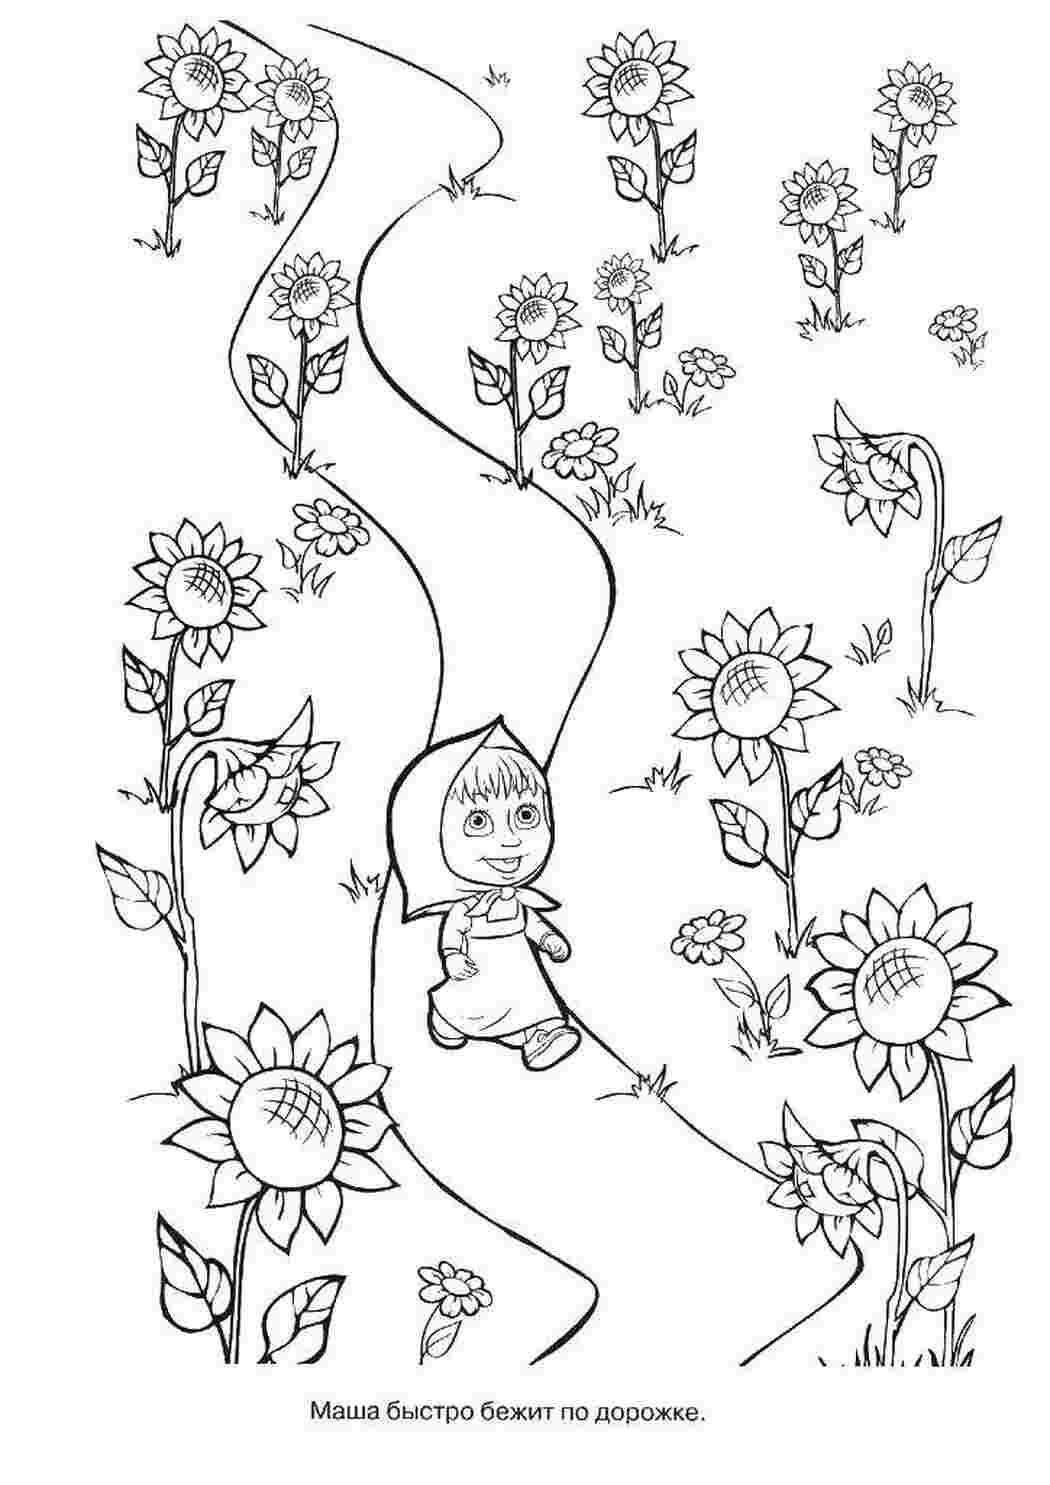 Раскраски Раскраски для детей про озорную Машу из мультфильма Маша и медведь  Маша идет по поляне